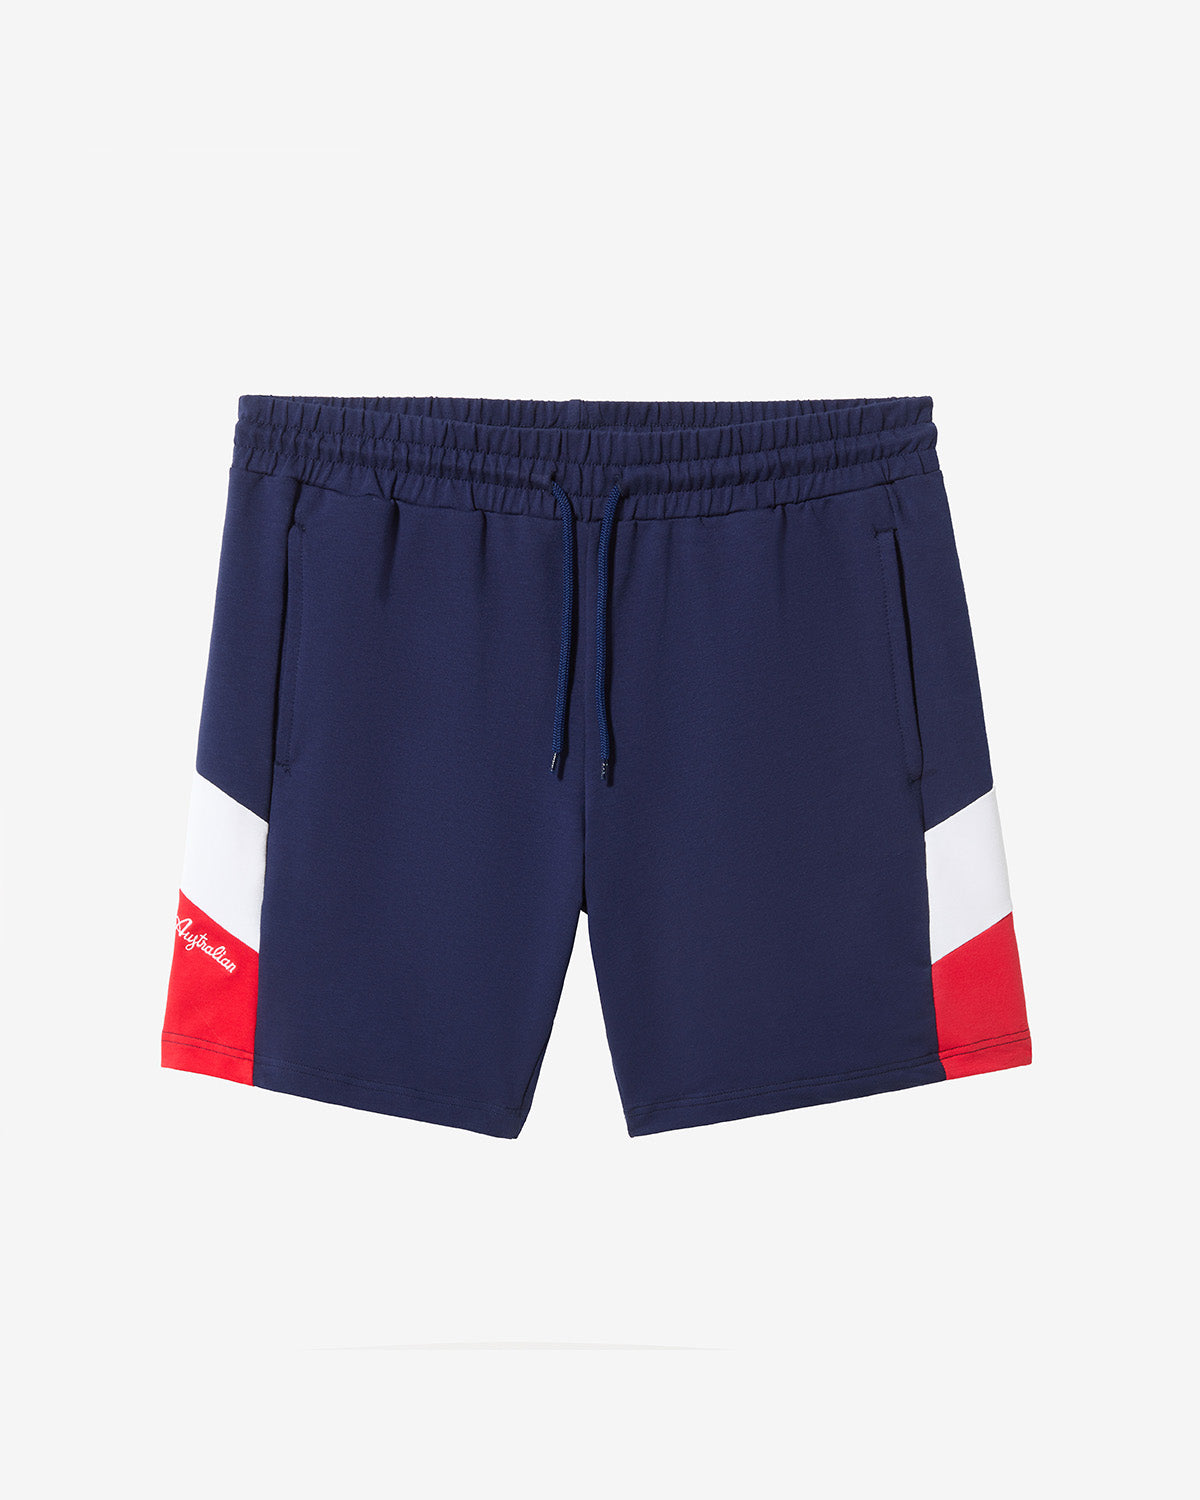 Icon Shorts: Australian Sportswear